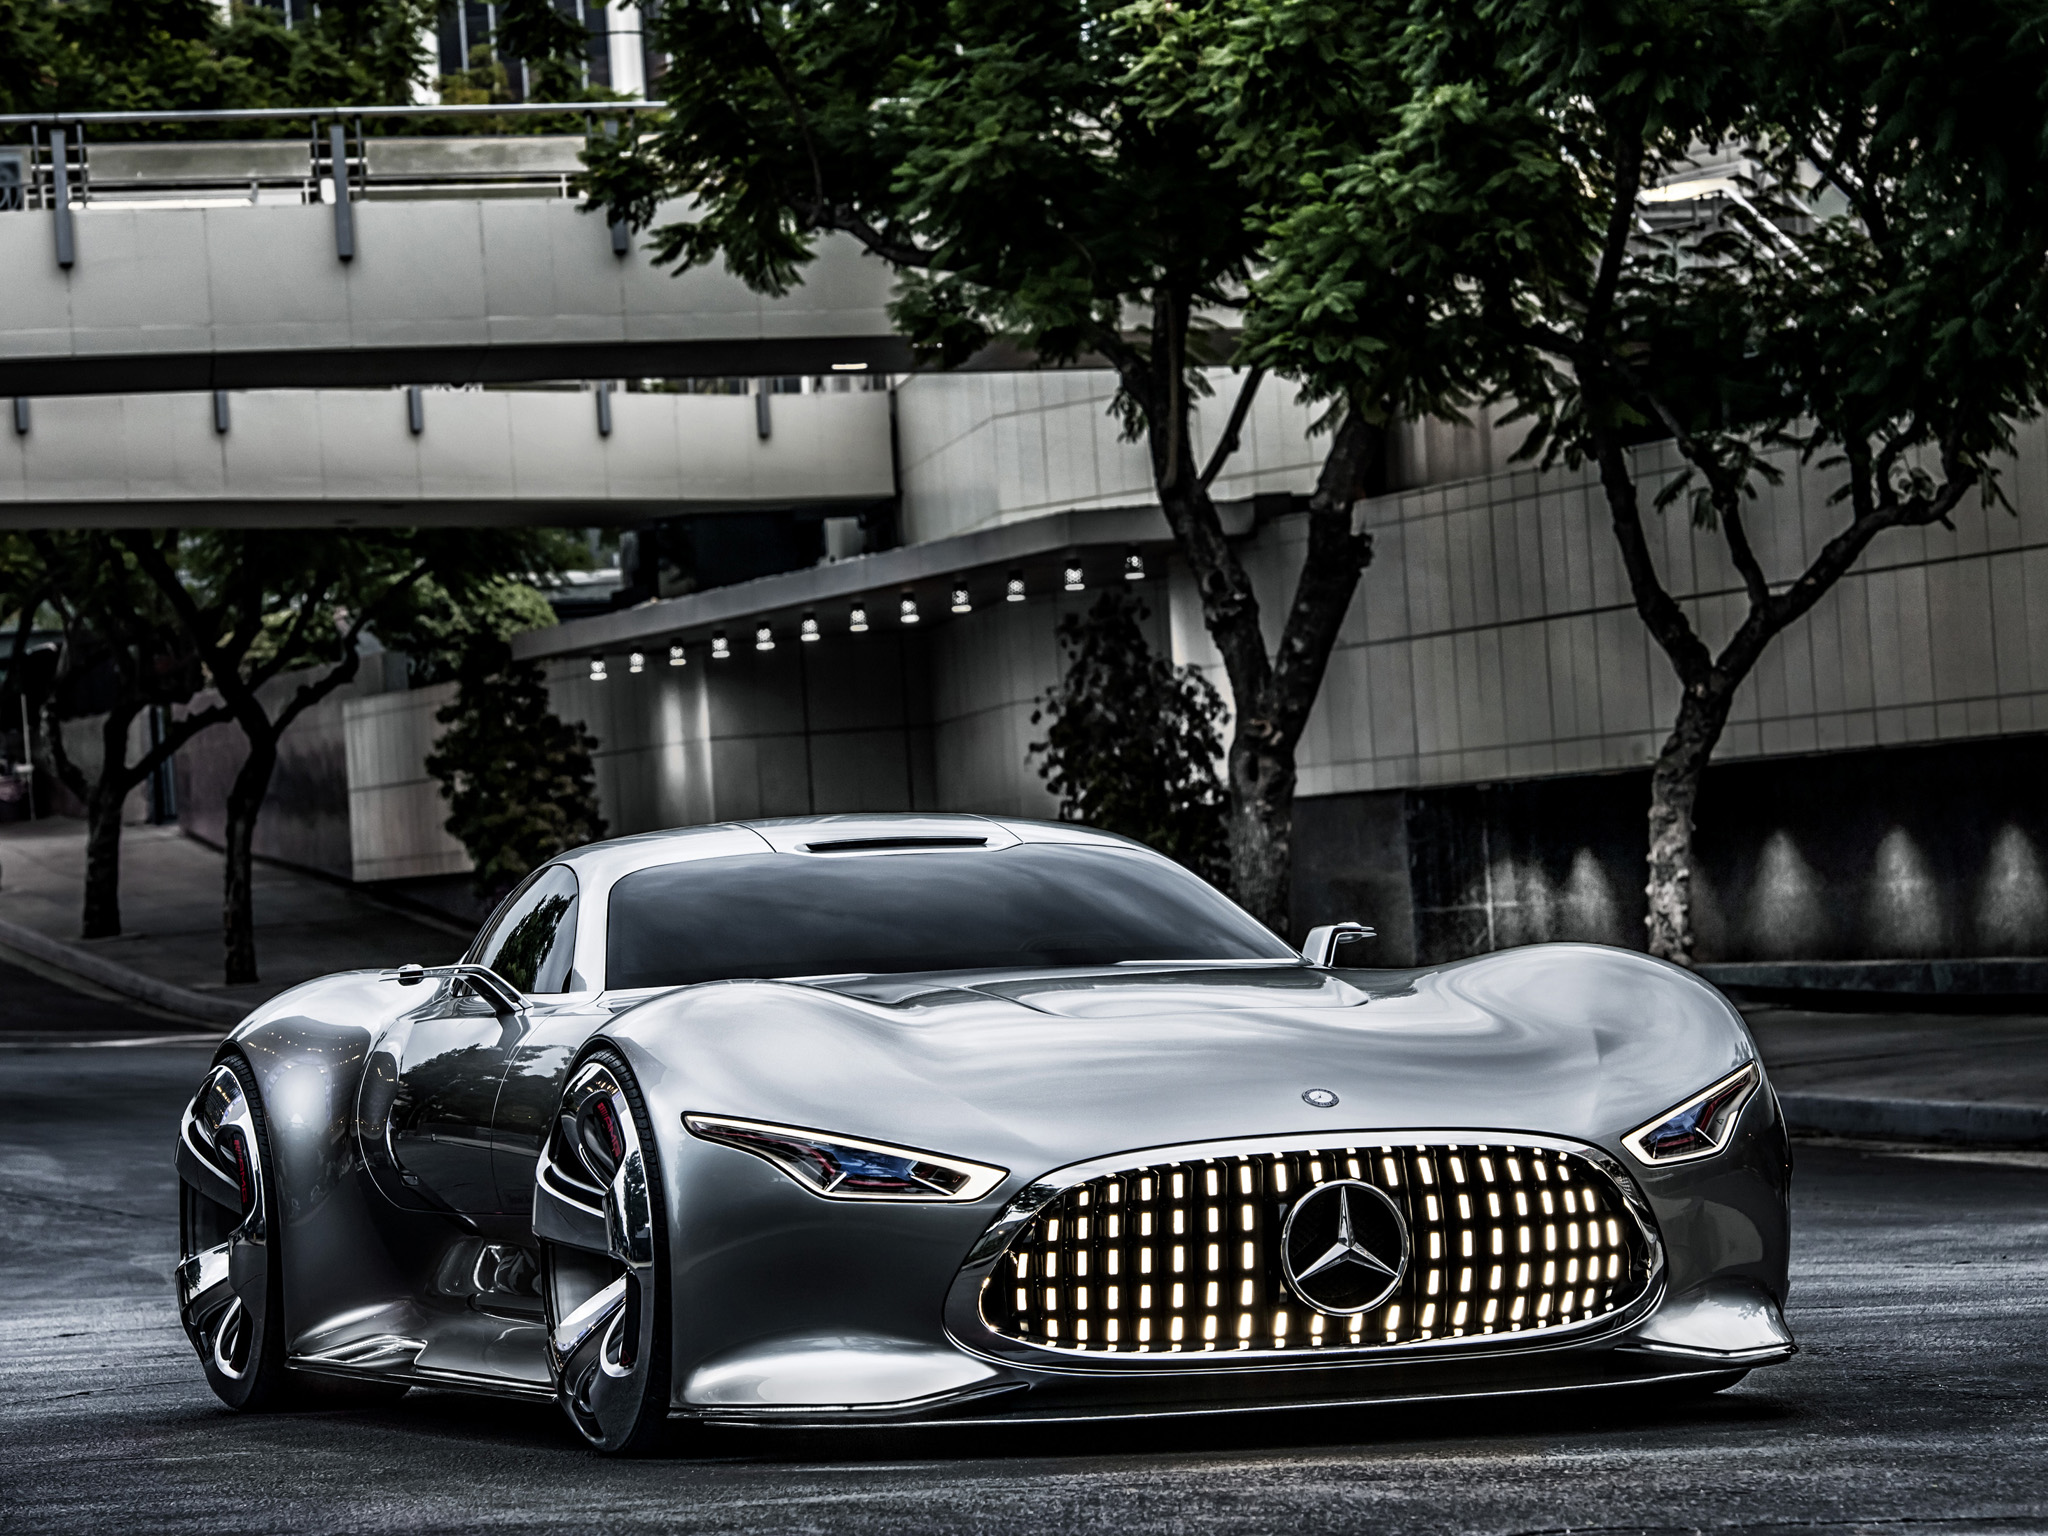 2014, Mercedes, Benz, Amg, Vision, Gran, Turismo, Concept, Supercar, Hf Wallpaper